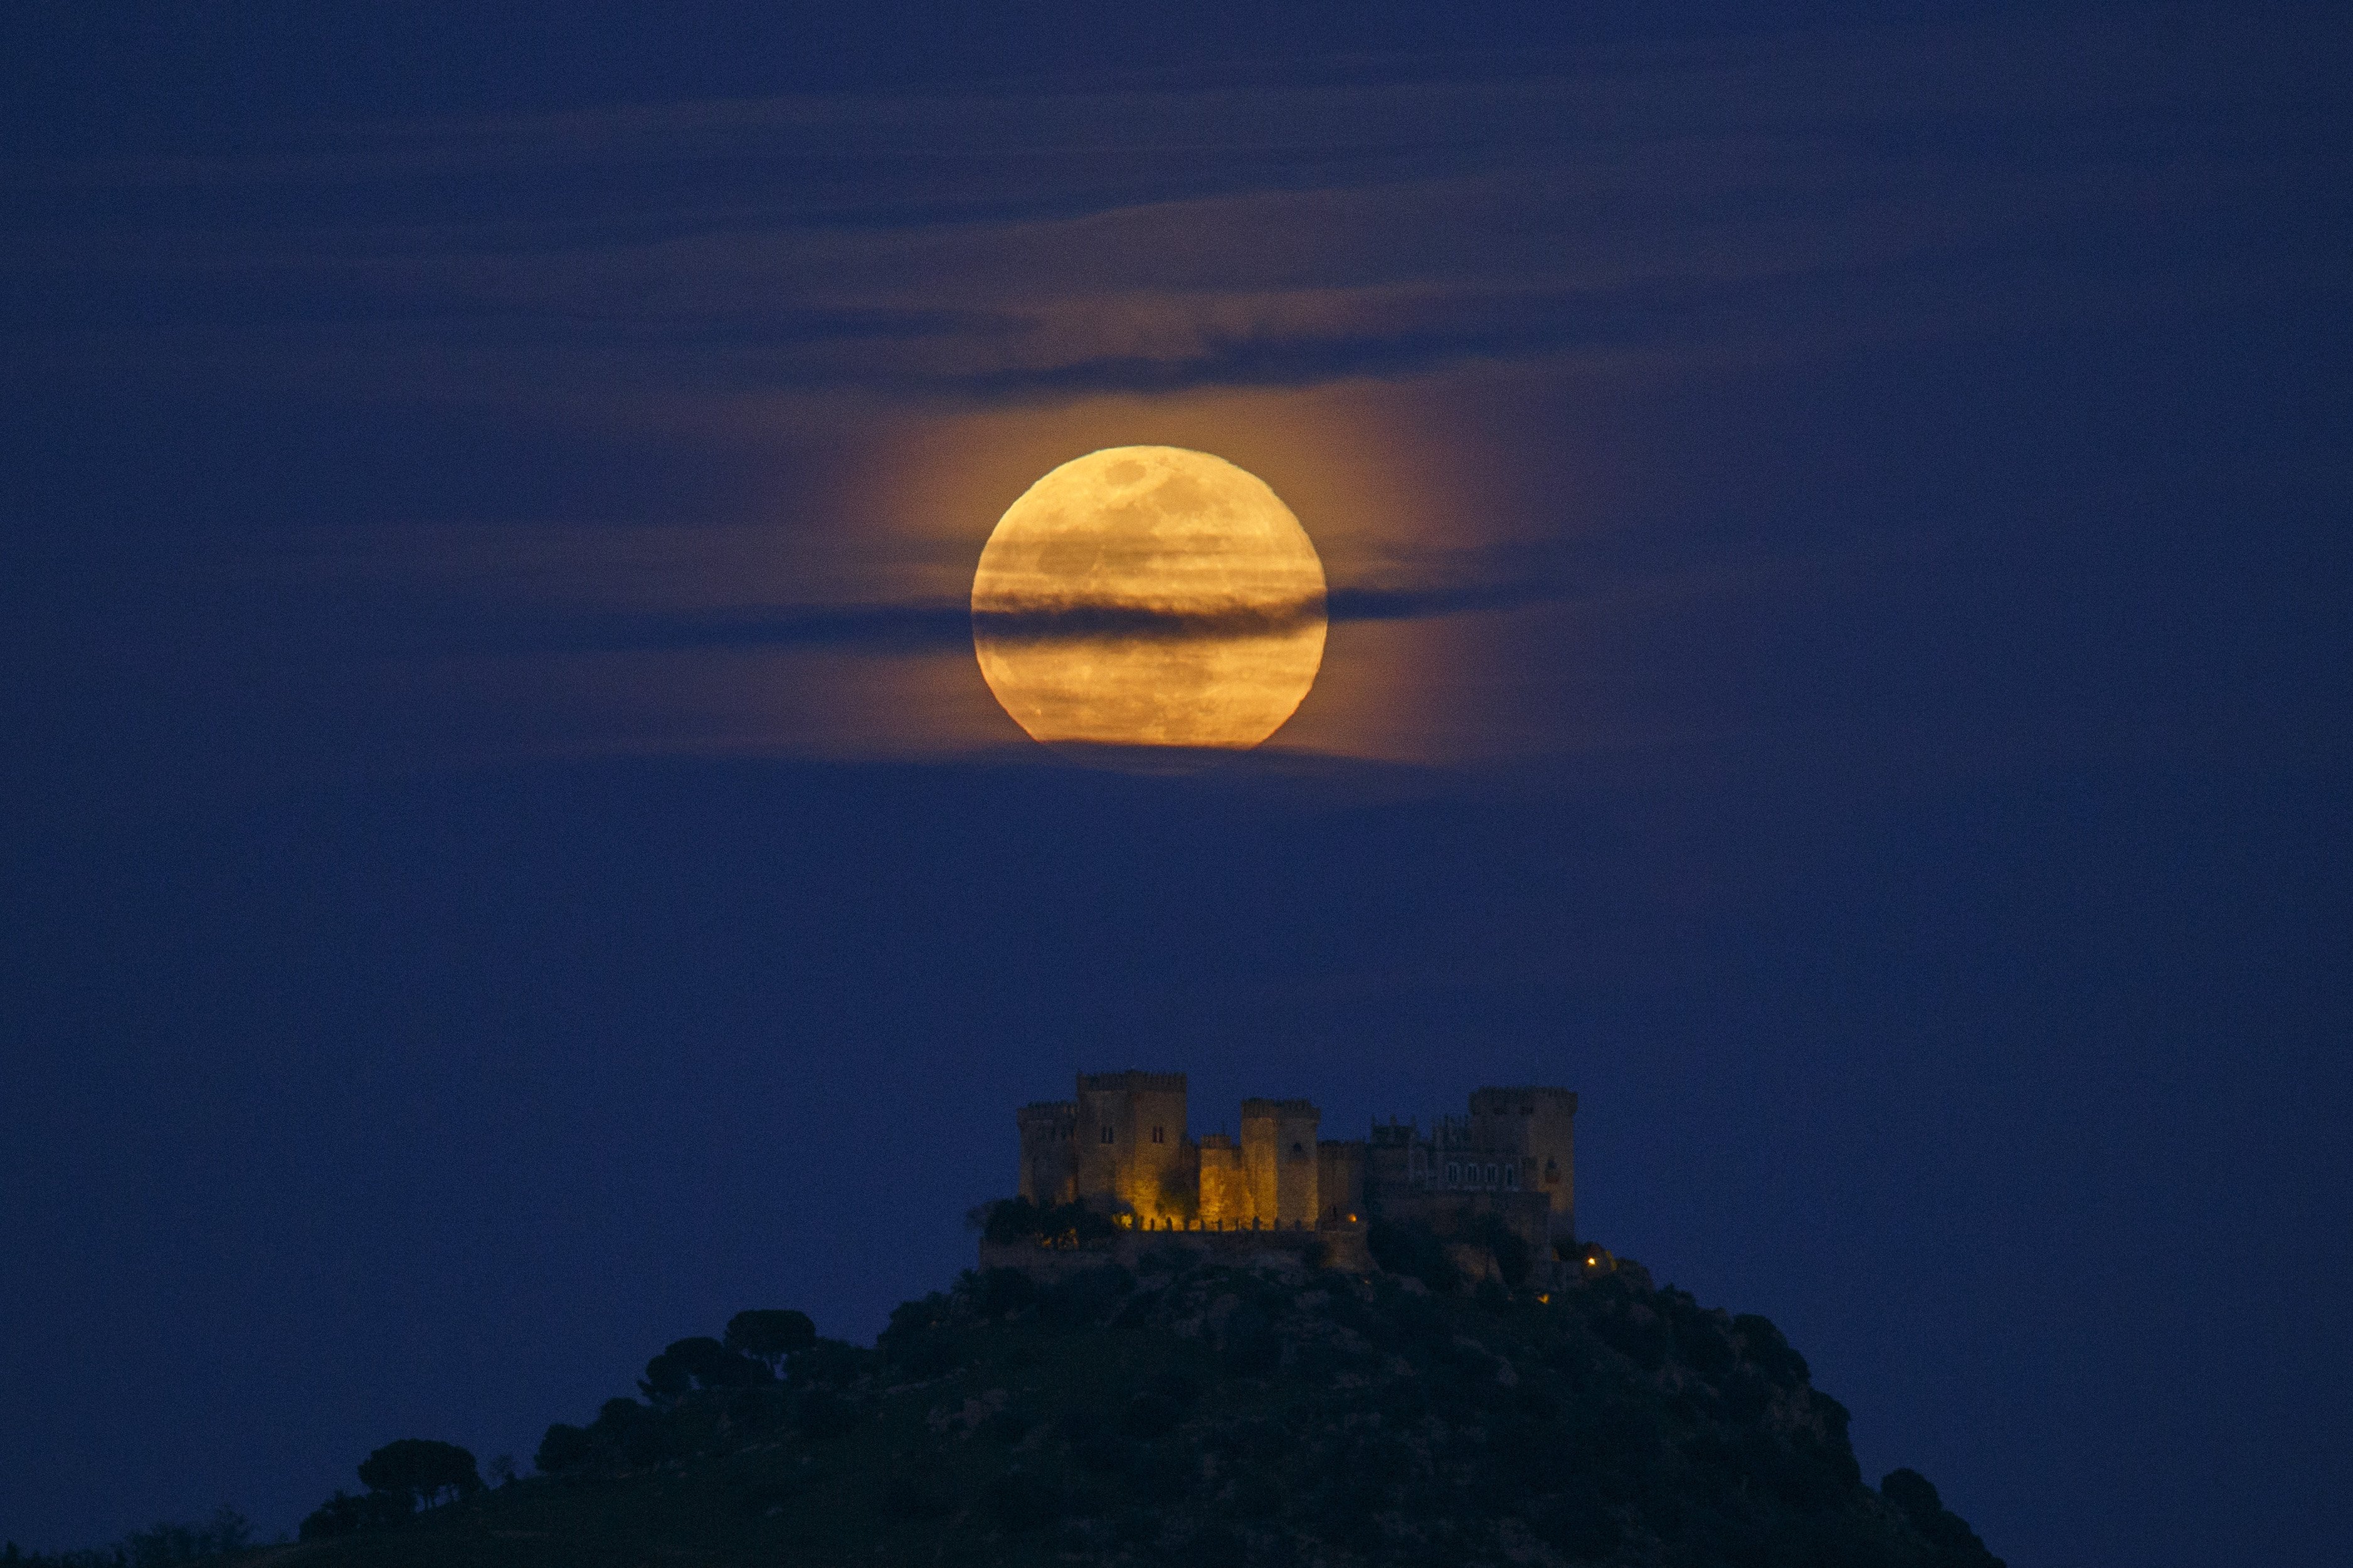 A full moon rises over Almodovar del Rio Castle on March 31, 2018 in Almodovar del Rio, Cordoba province, Spain | Source: Getty Images